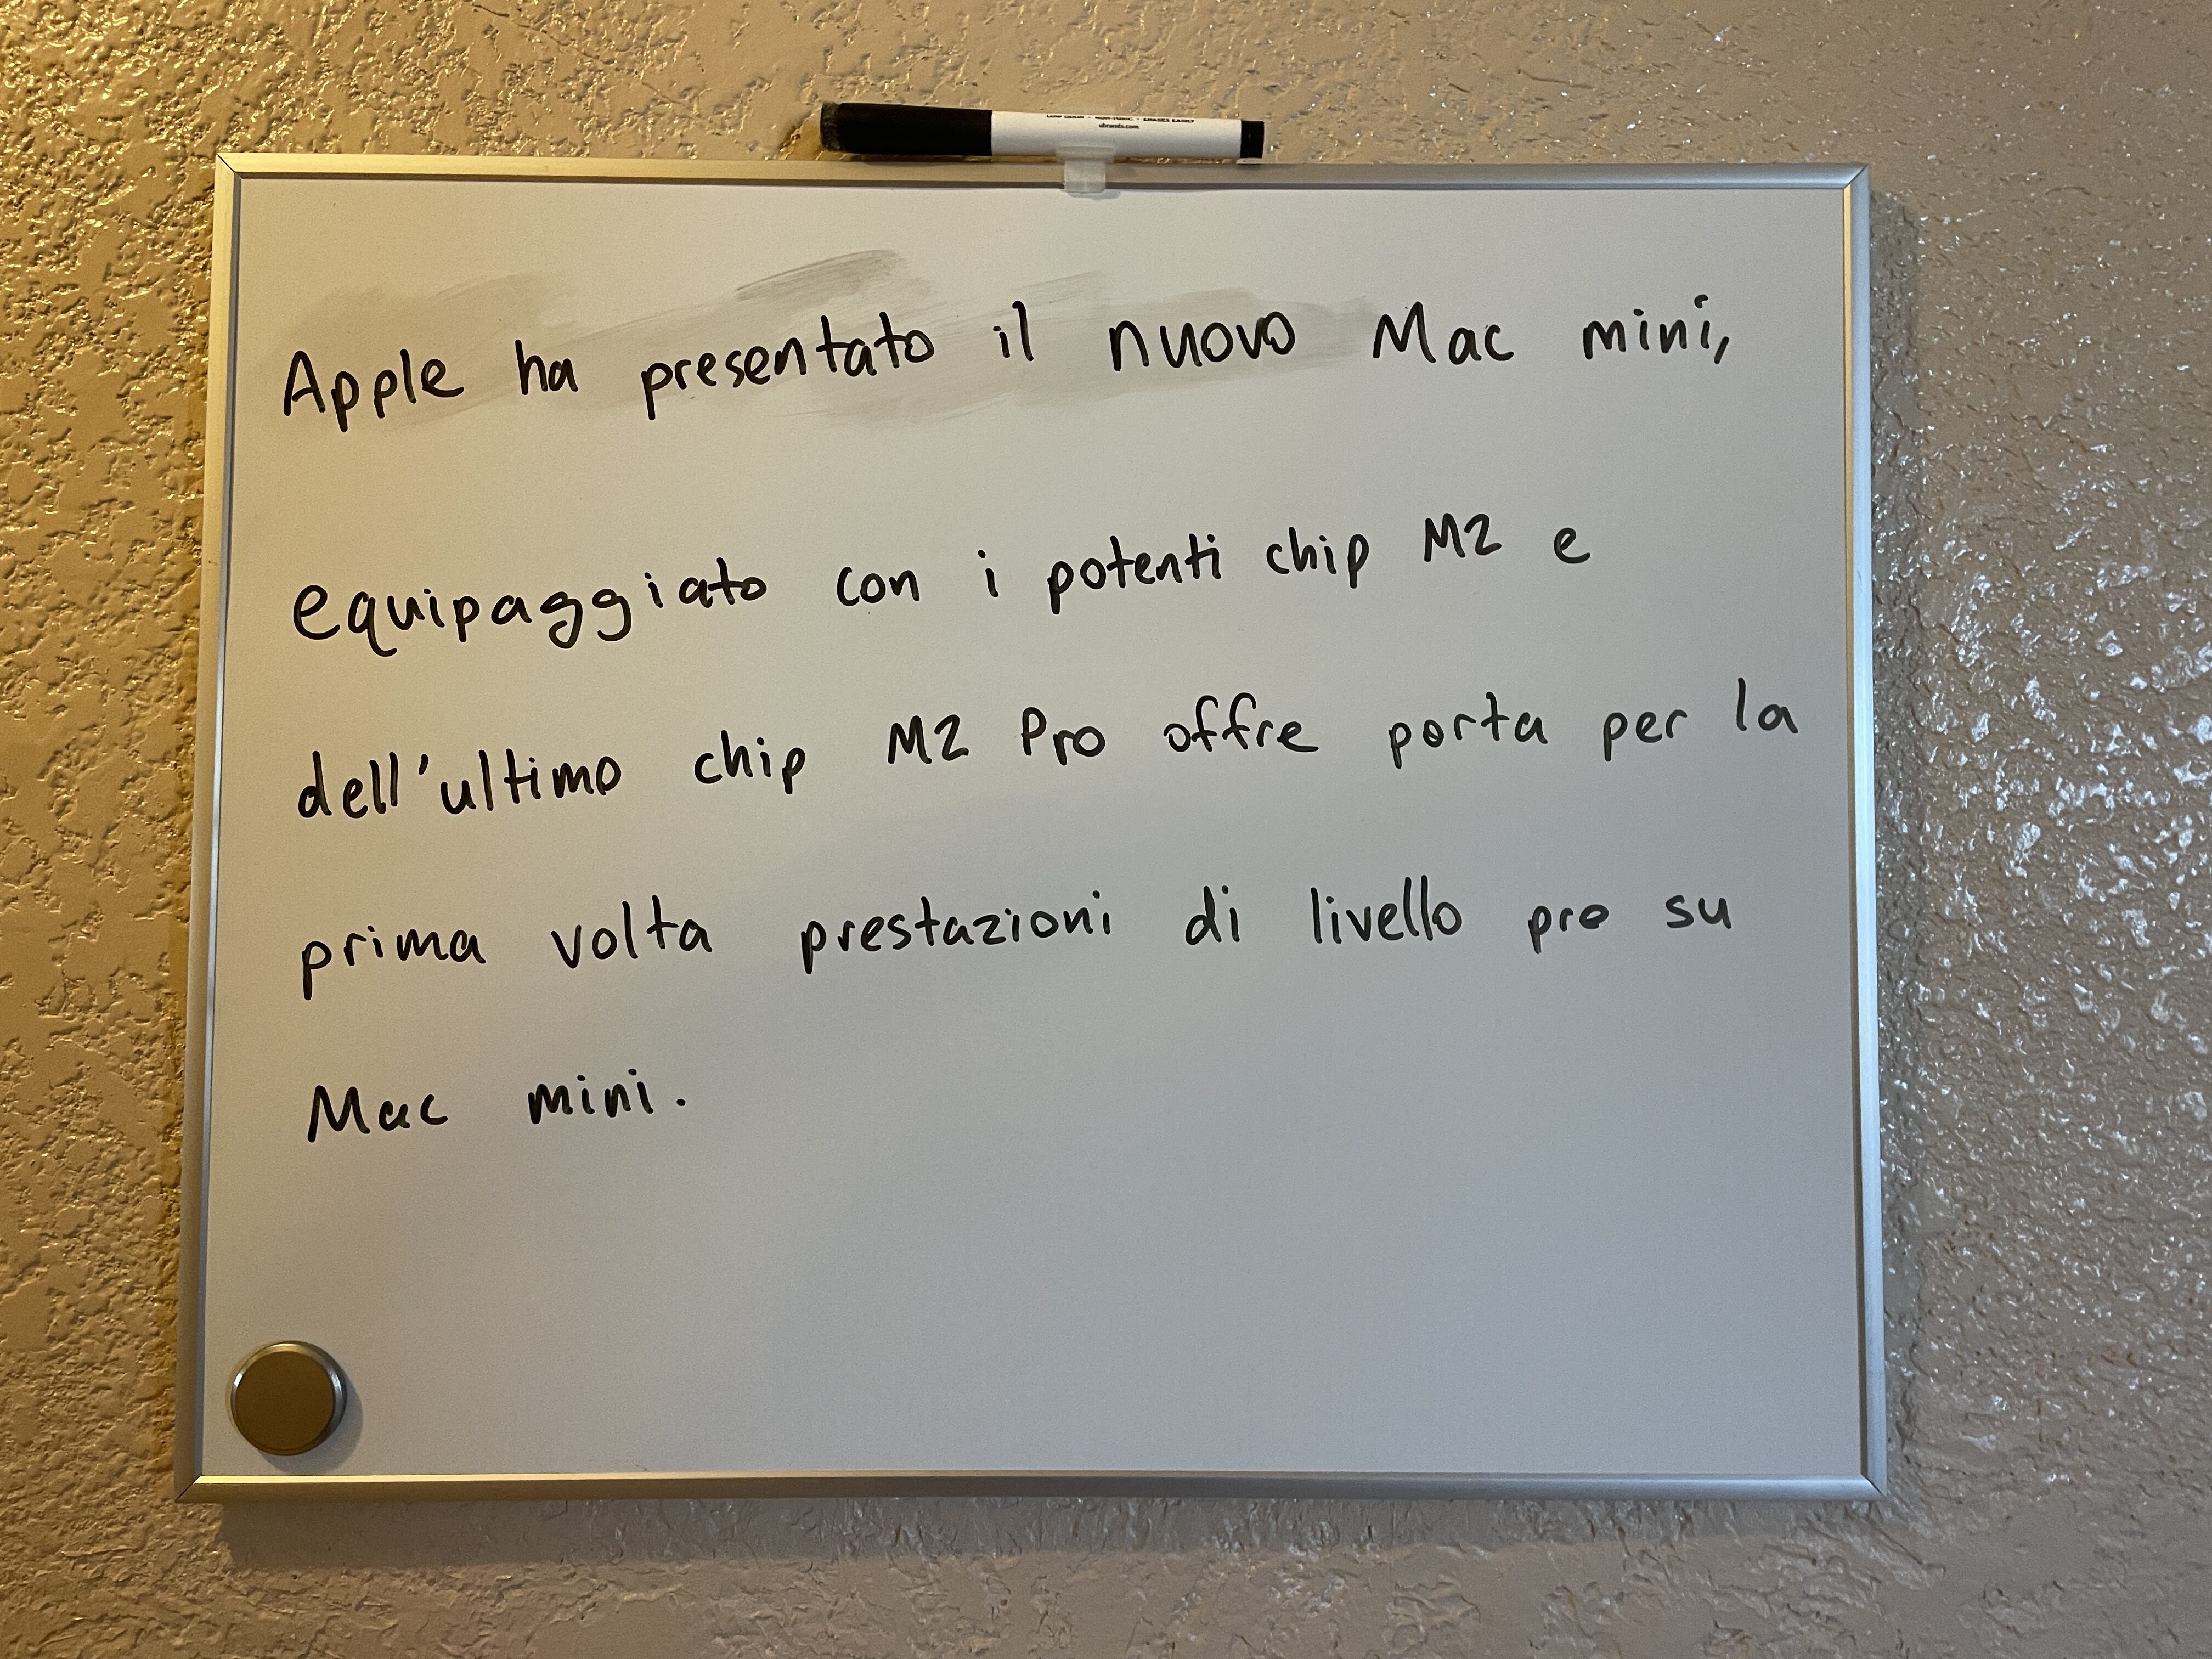 Handwriting on a white board: “Apple ha presentato il nuovo Mac mini, equipaggiato con i potenti chip M2 e dell’ultimo chip M2 Pro porta per la prima volta prestazioni di livello pro su Mac mini.”